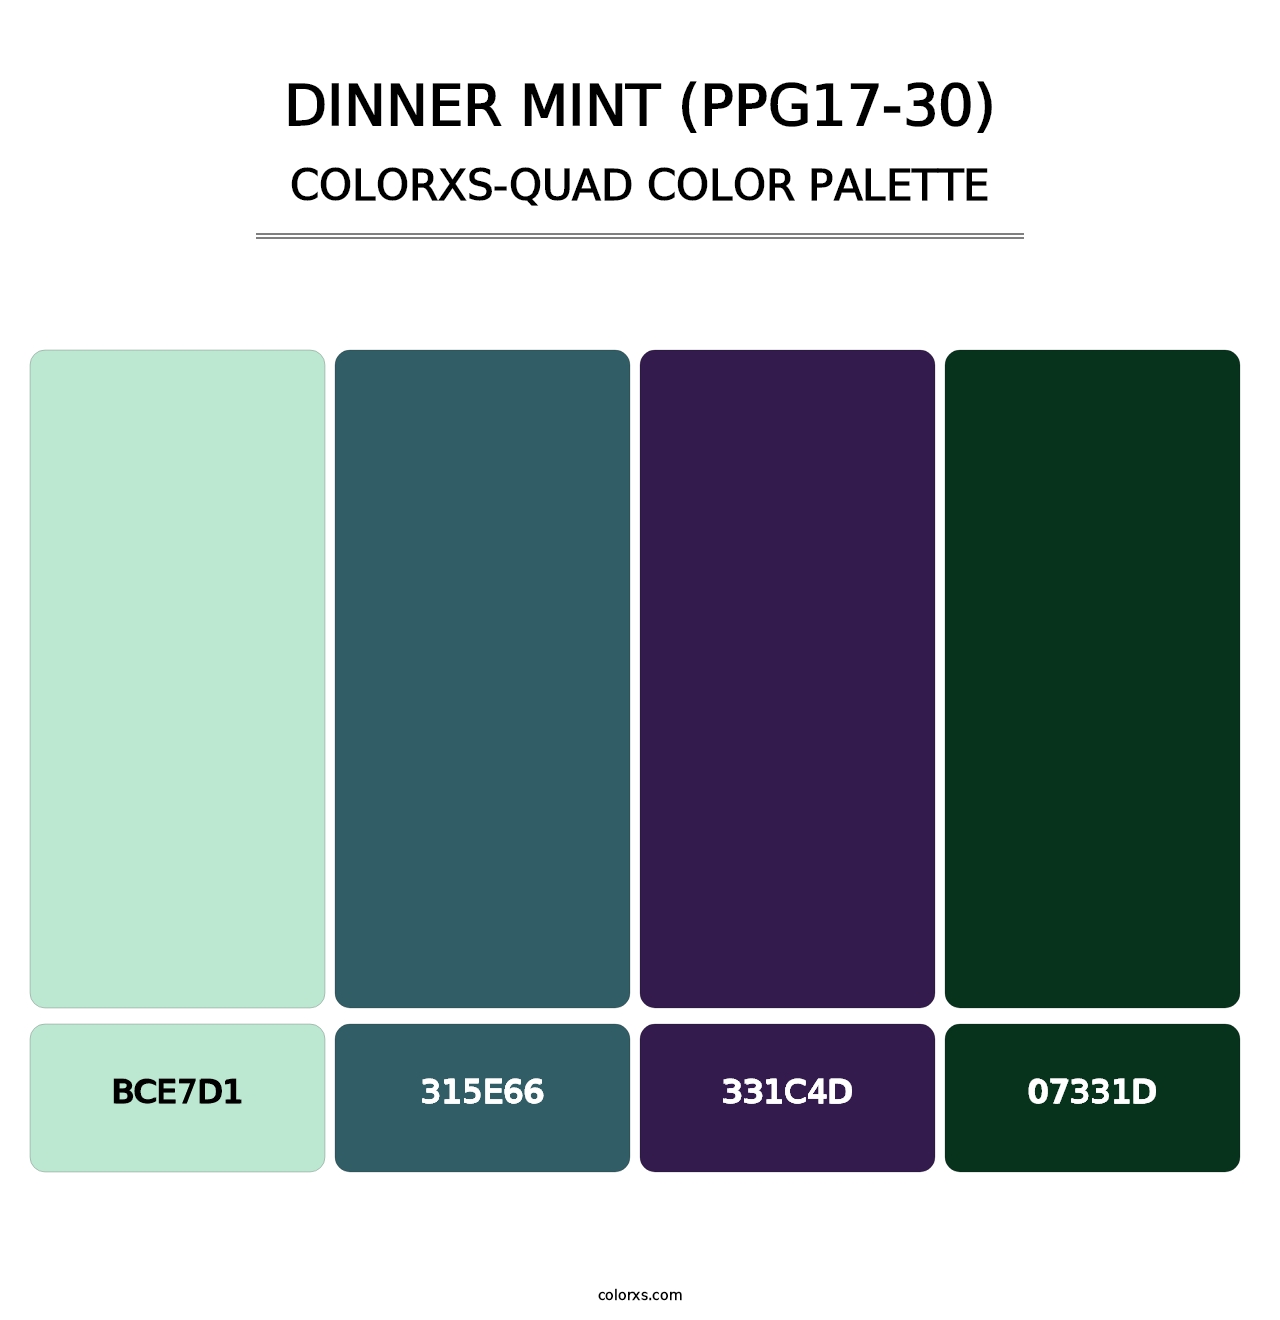 Dinner Mint (PPG17-30) - Colorxs Quad Palette